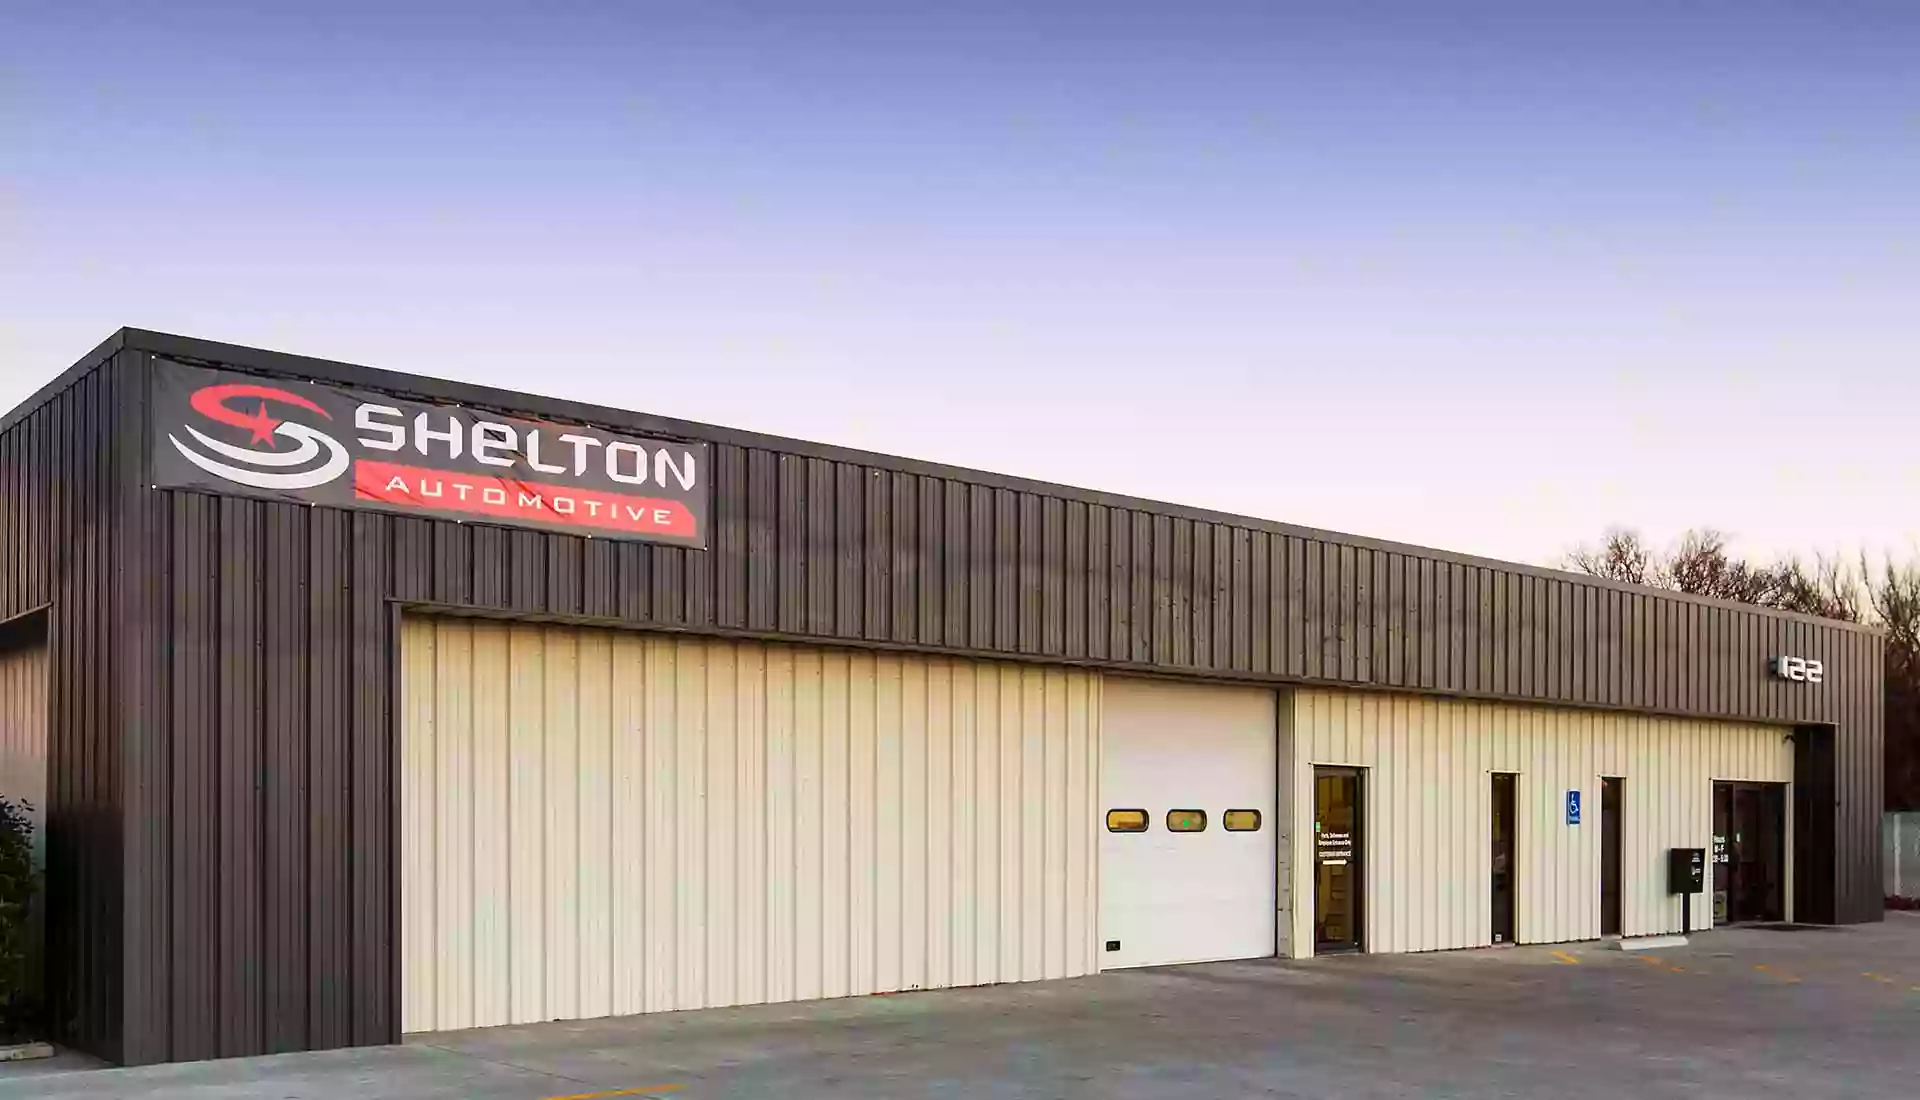 Shelton Automotive